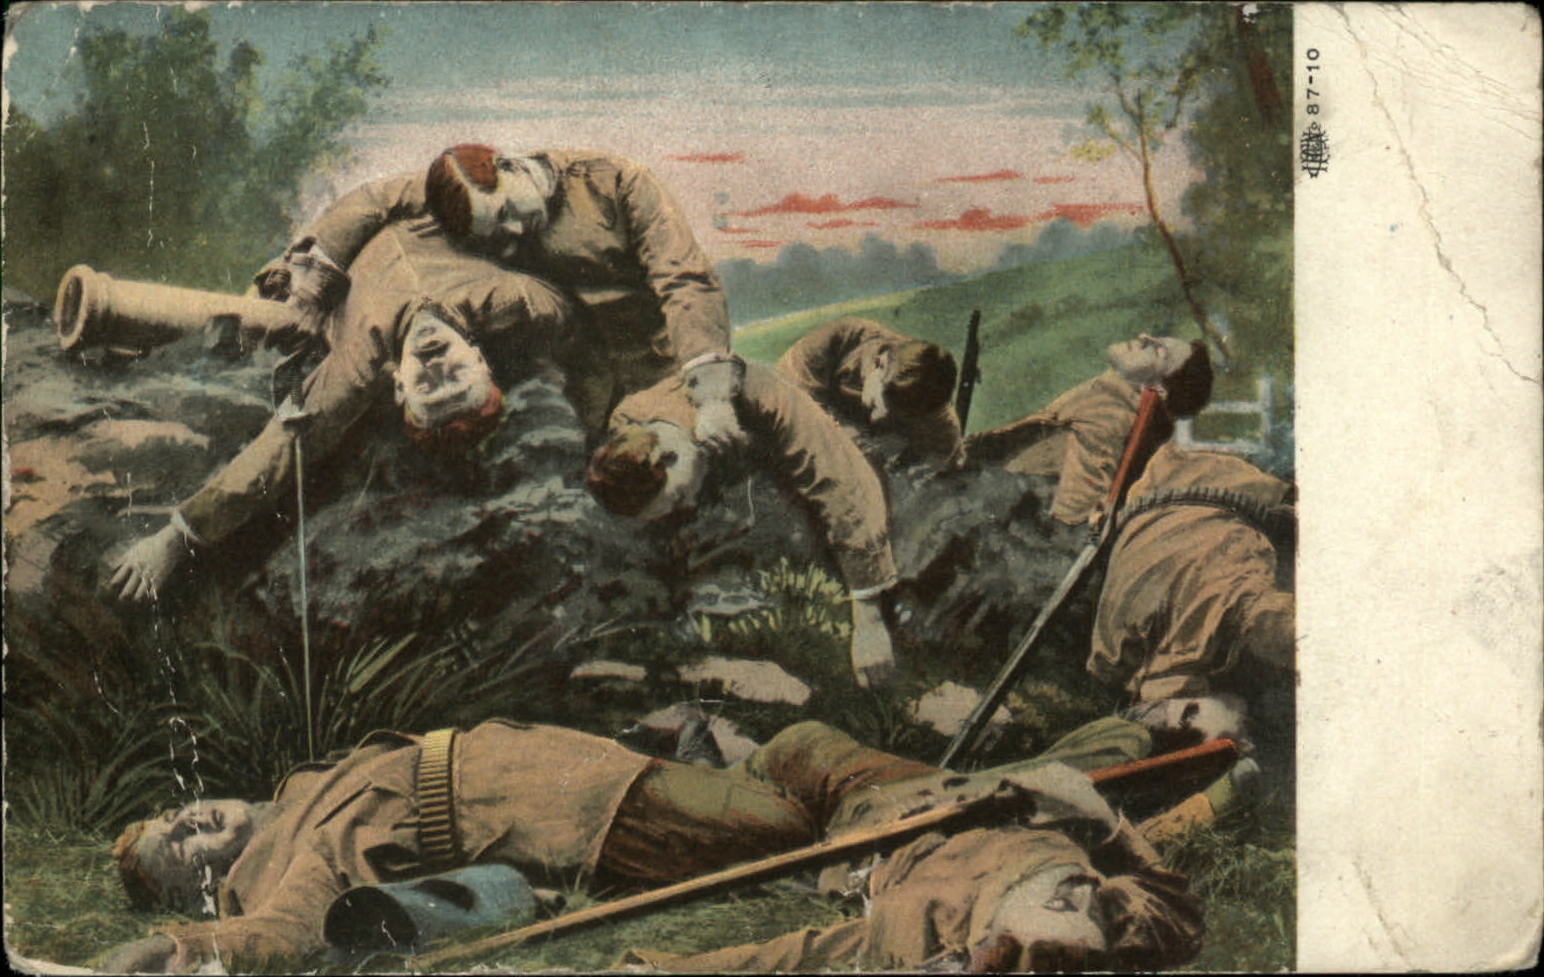 Mexican Border War era dead US Army soldiers c1910 vintage postcard